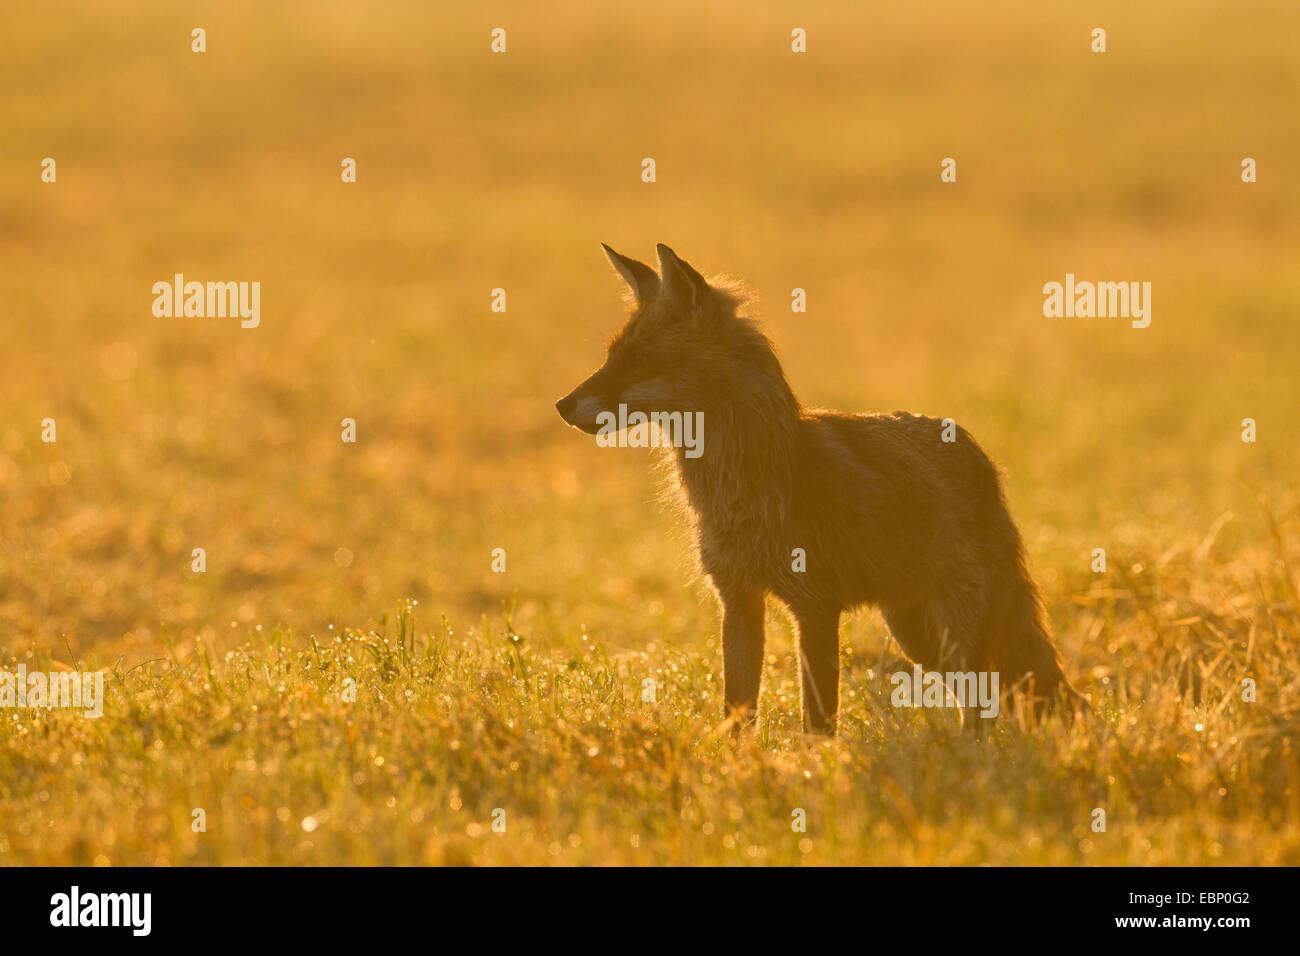 Le renard roux (Vulpes vulpes), dans un pré dans la lumière du matin, Allemagne Banque D'Images